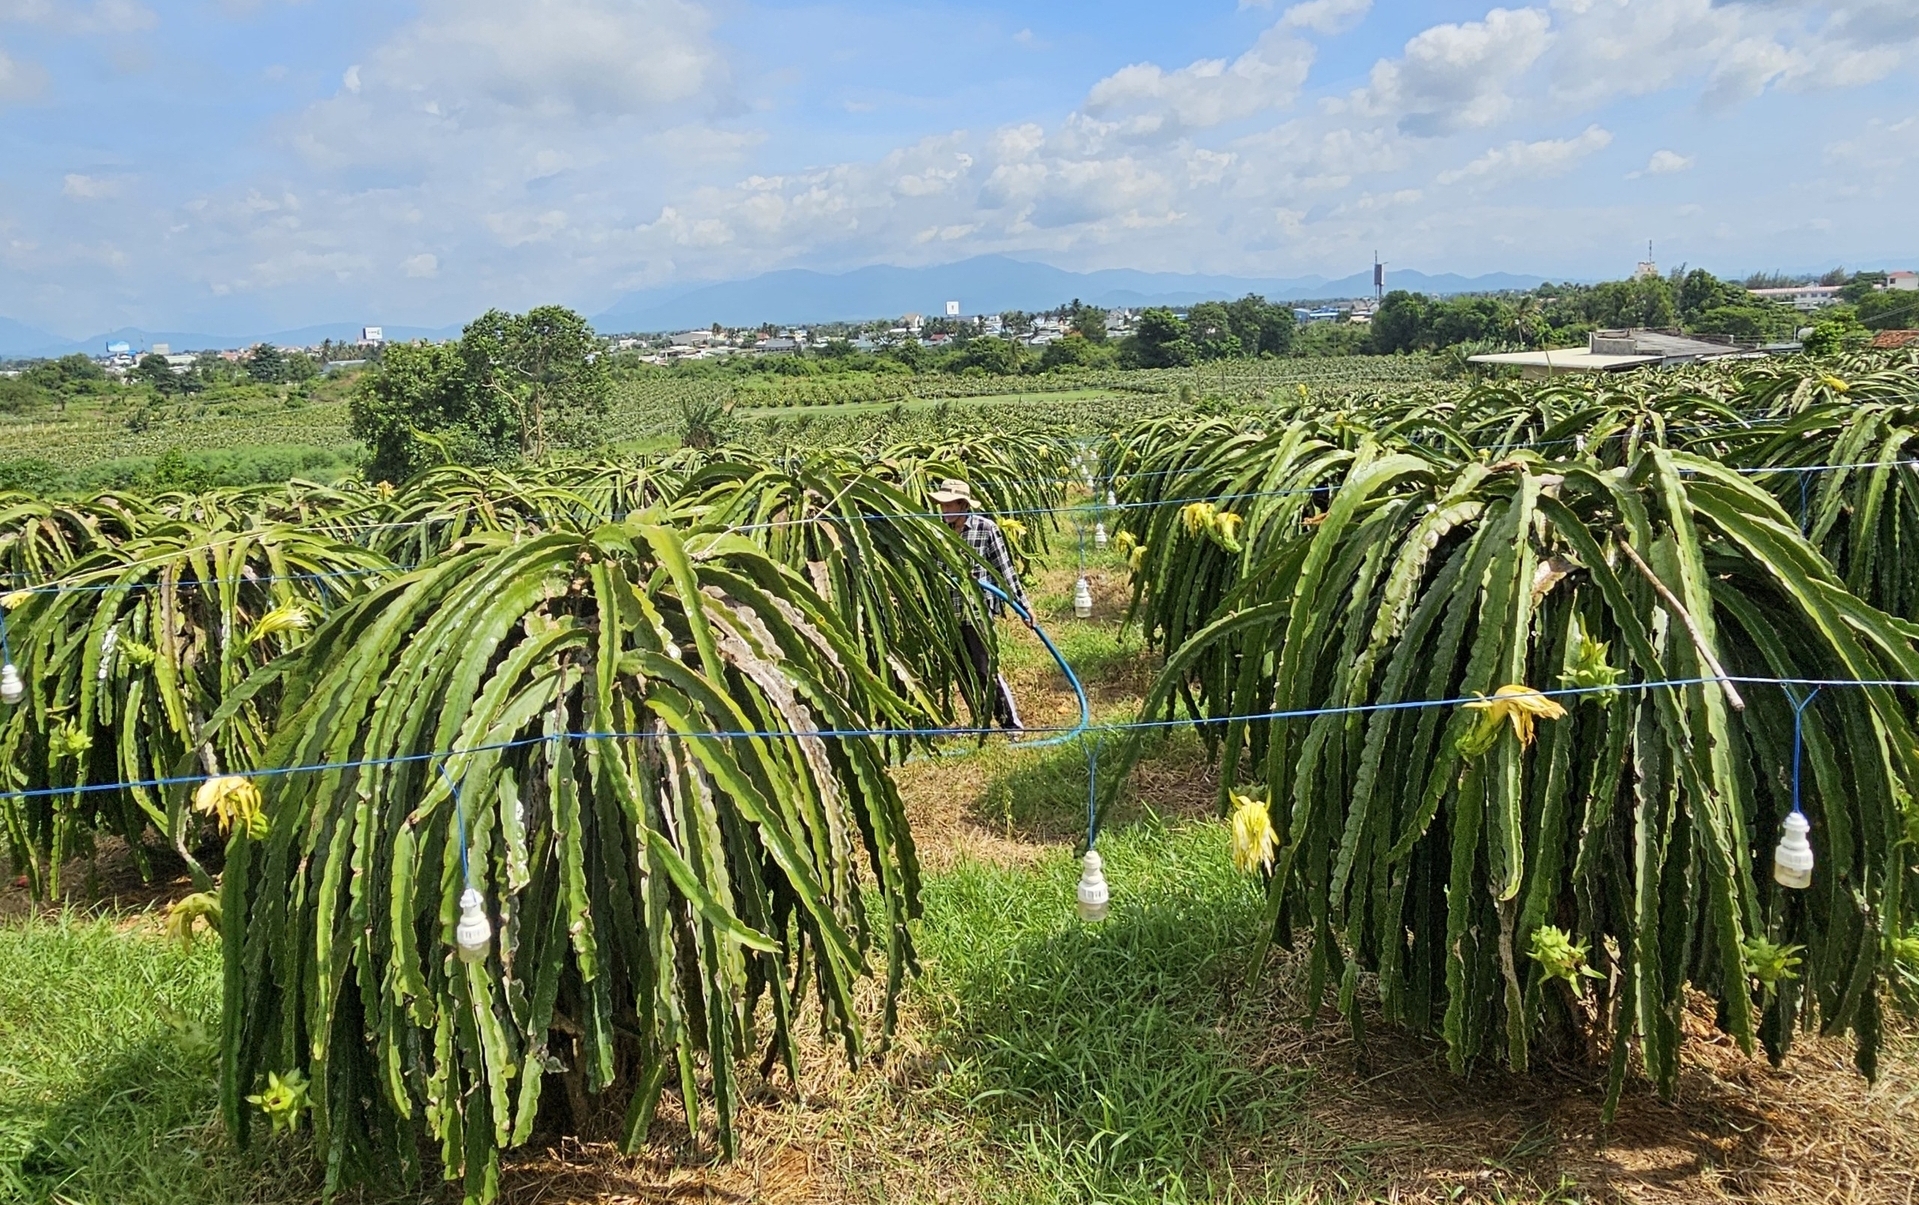 Ngành nông nghiệp Bình Thuận sẽ đẩy mạnh tái cơ cấu theo hướng nâng cao năng suất, chất lượng và giá trị các loại nông sản.